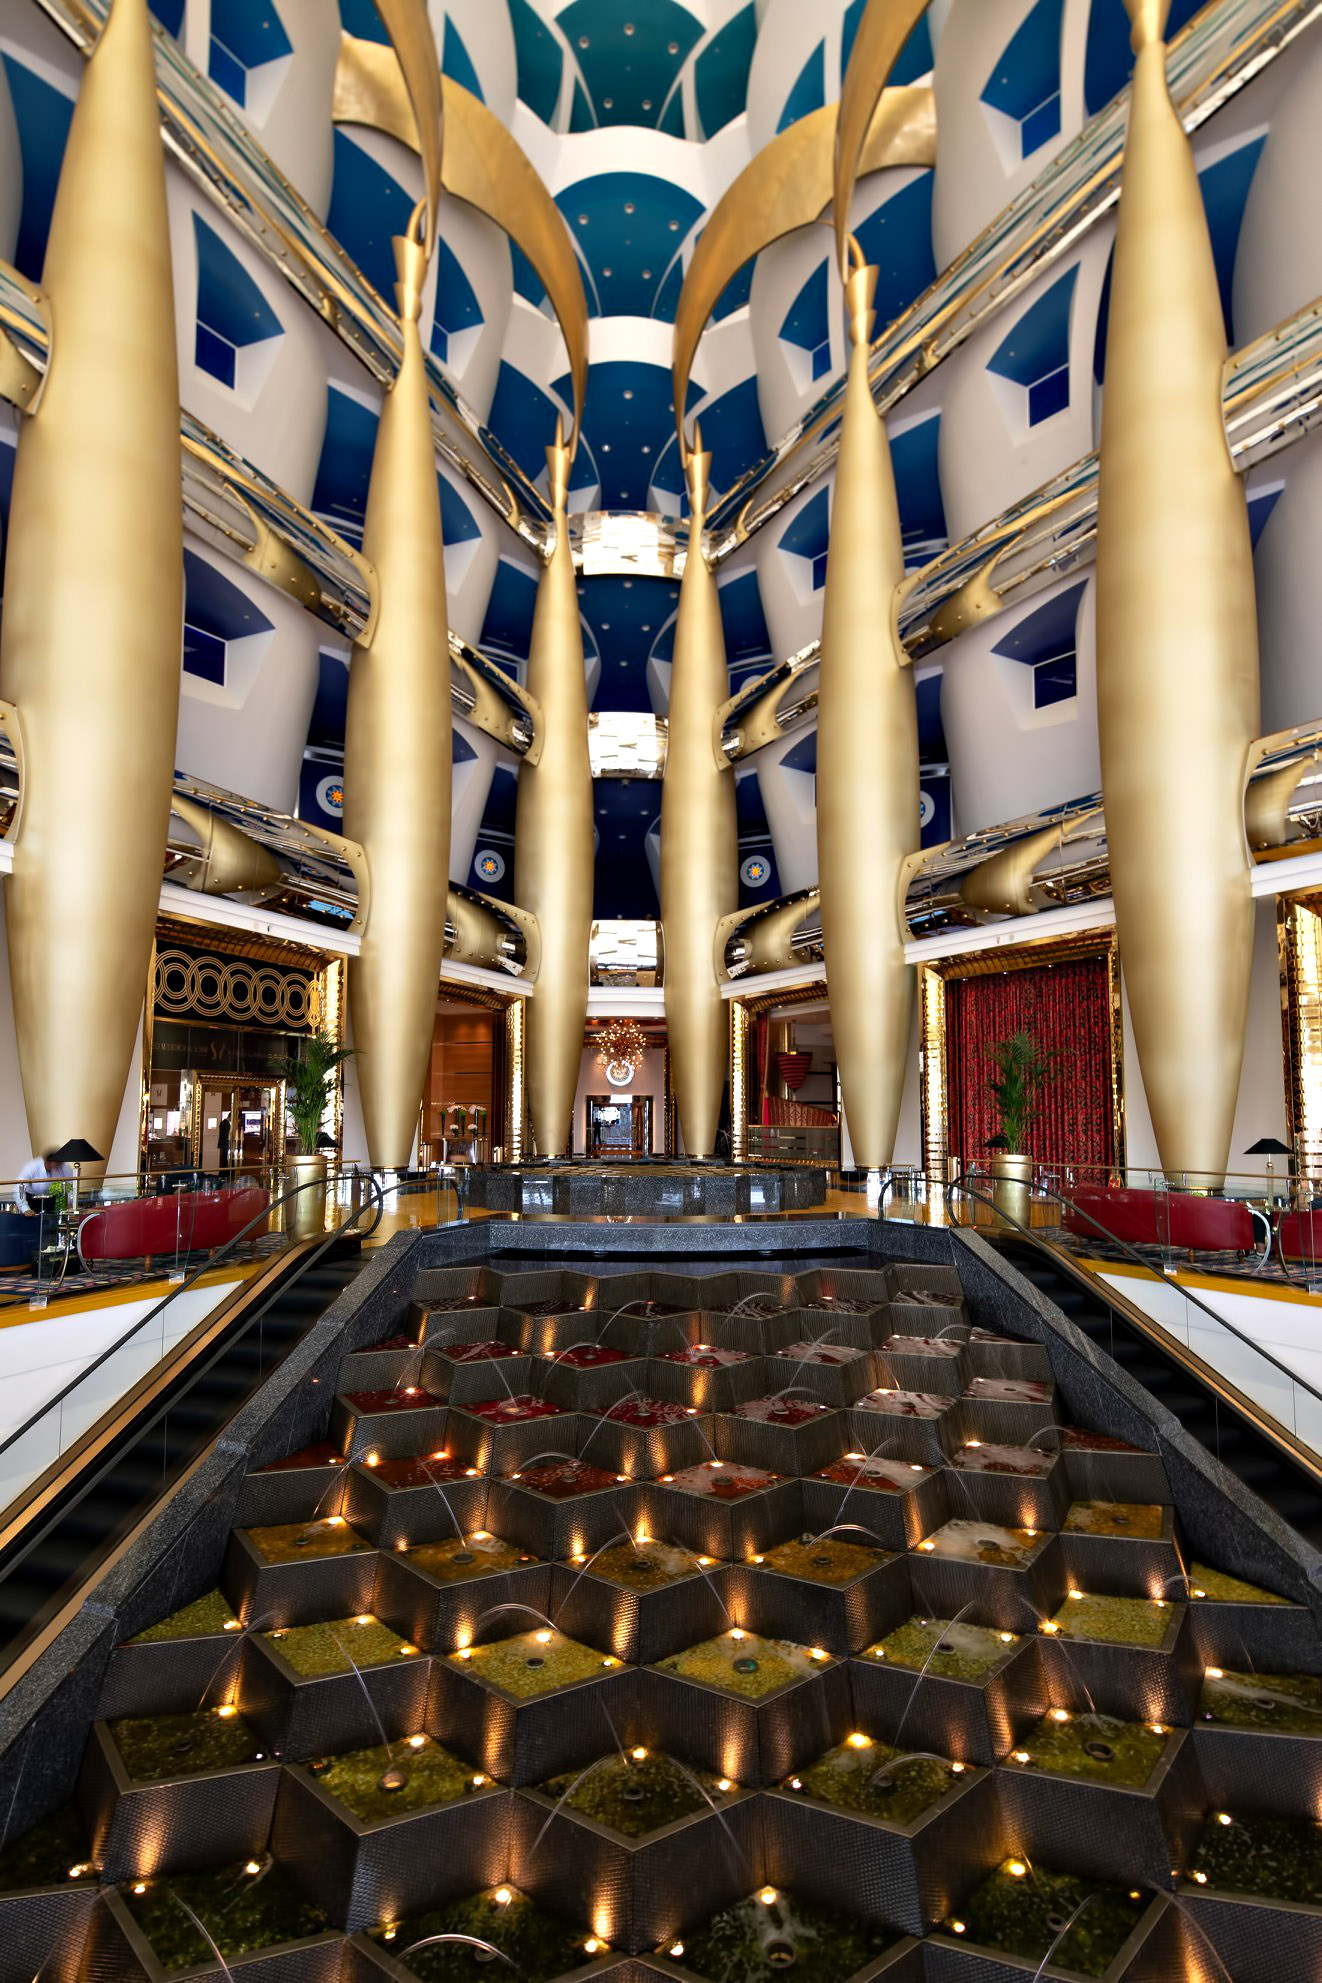 Burj Al Arab Jumeirah Hotel – Dubai, UAE – Lobby Escalators